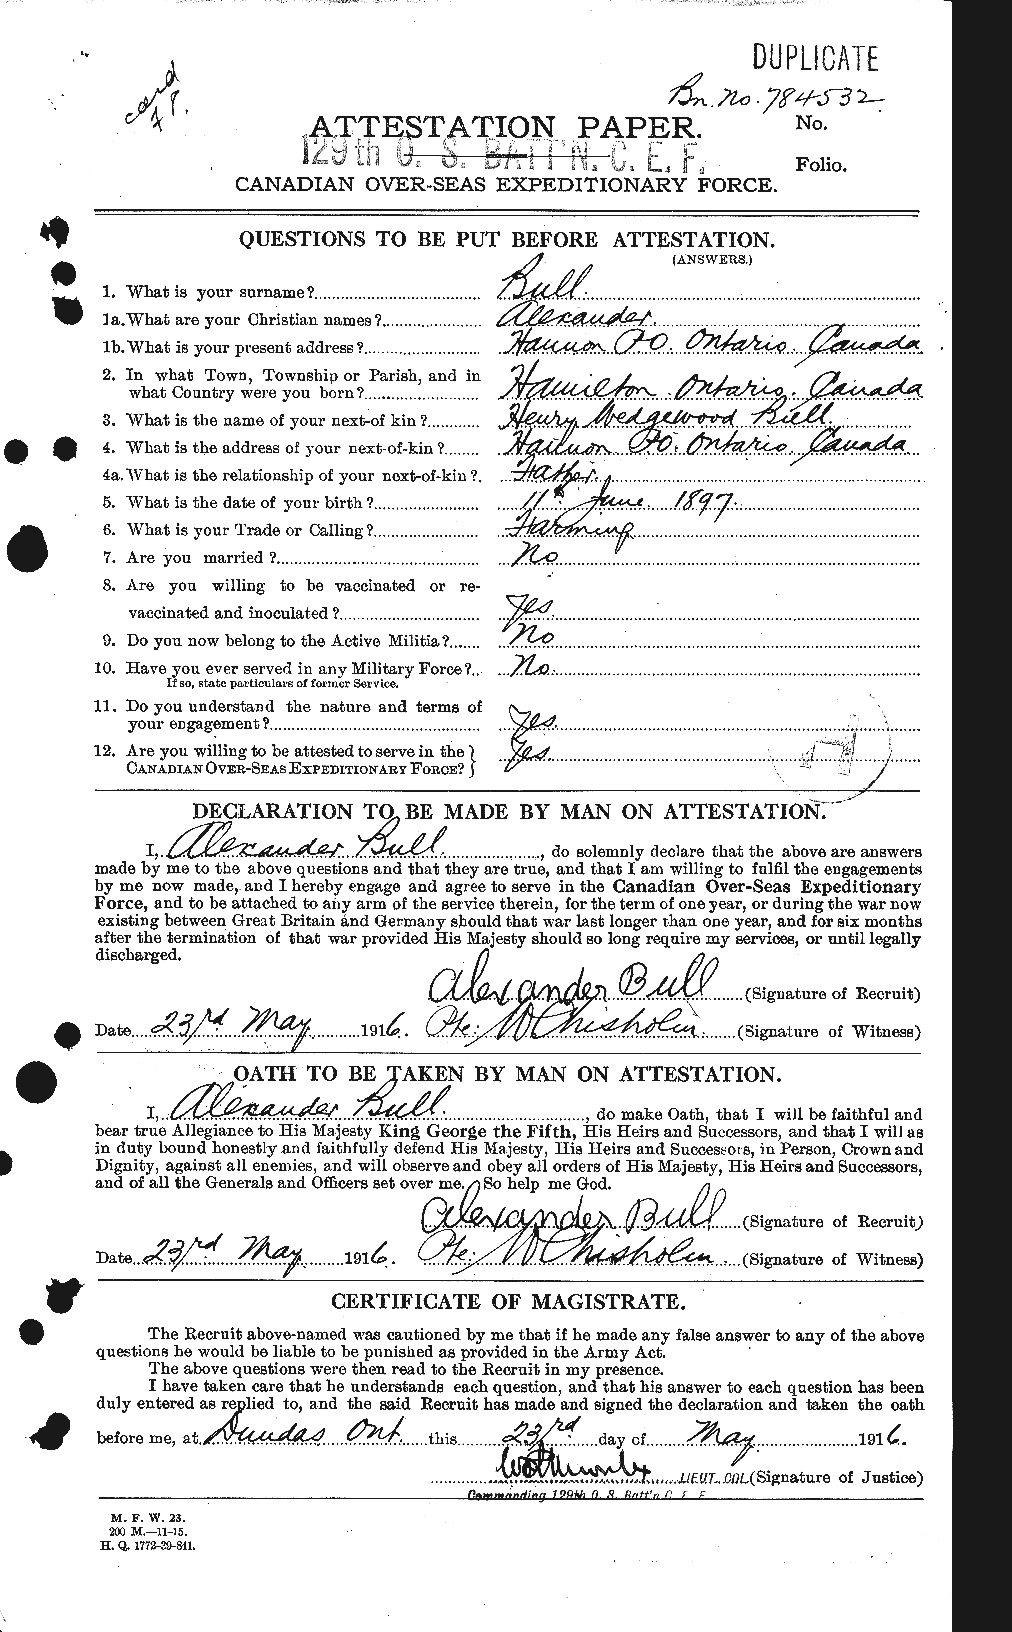 Dossiers du Personnel de la Première Guerre mondiale - CEC 270653a